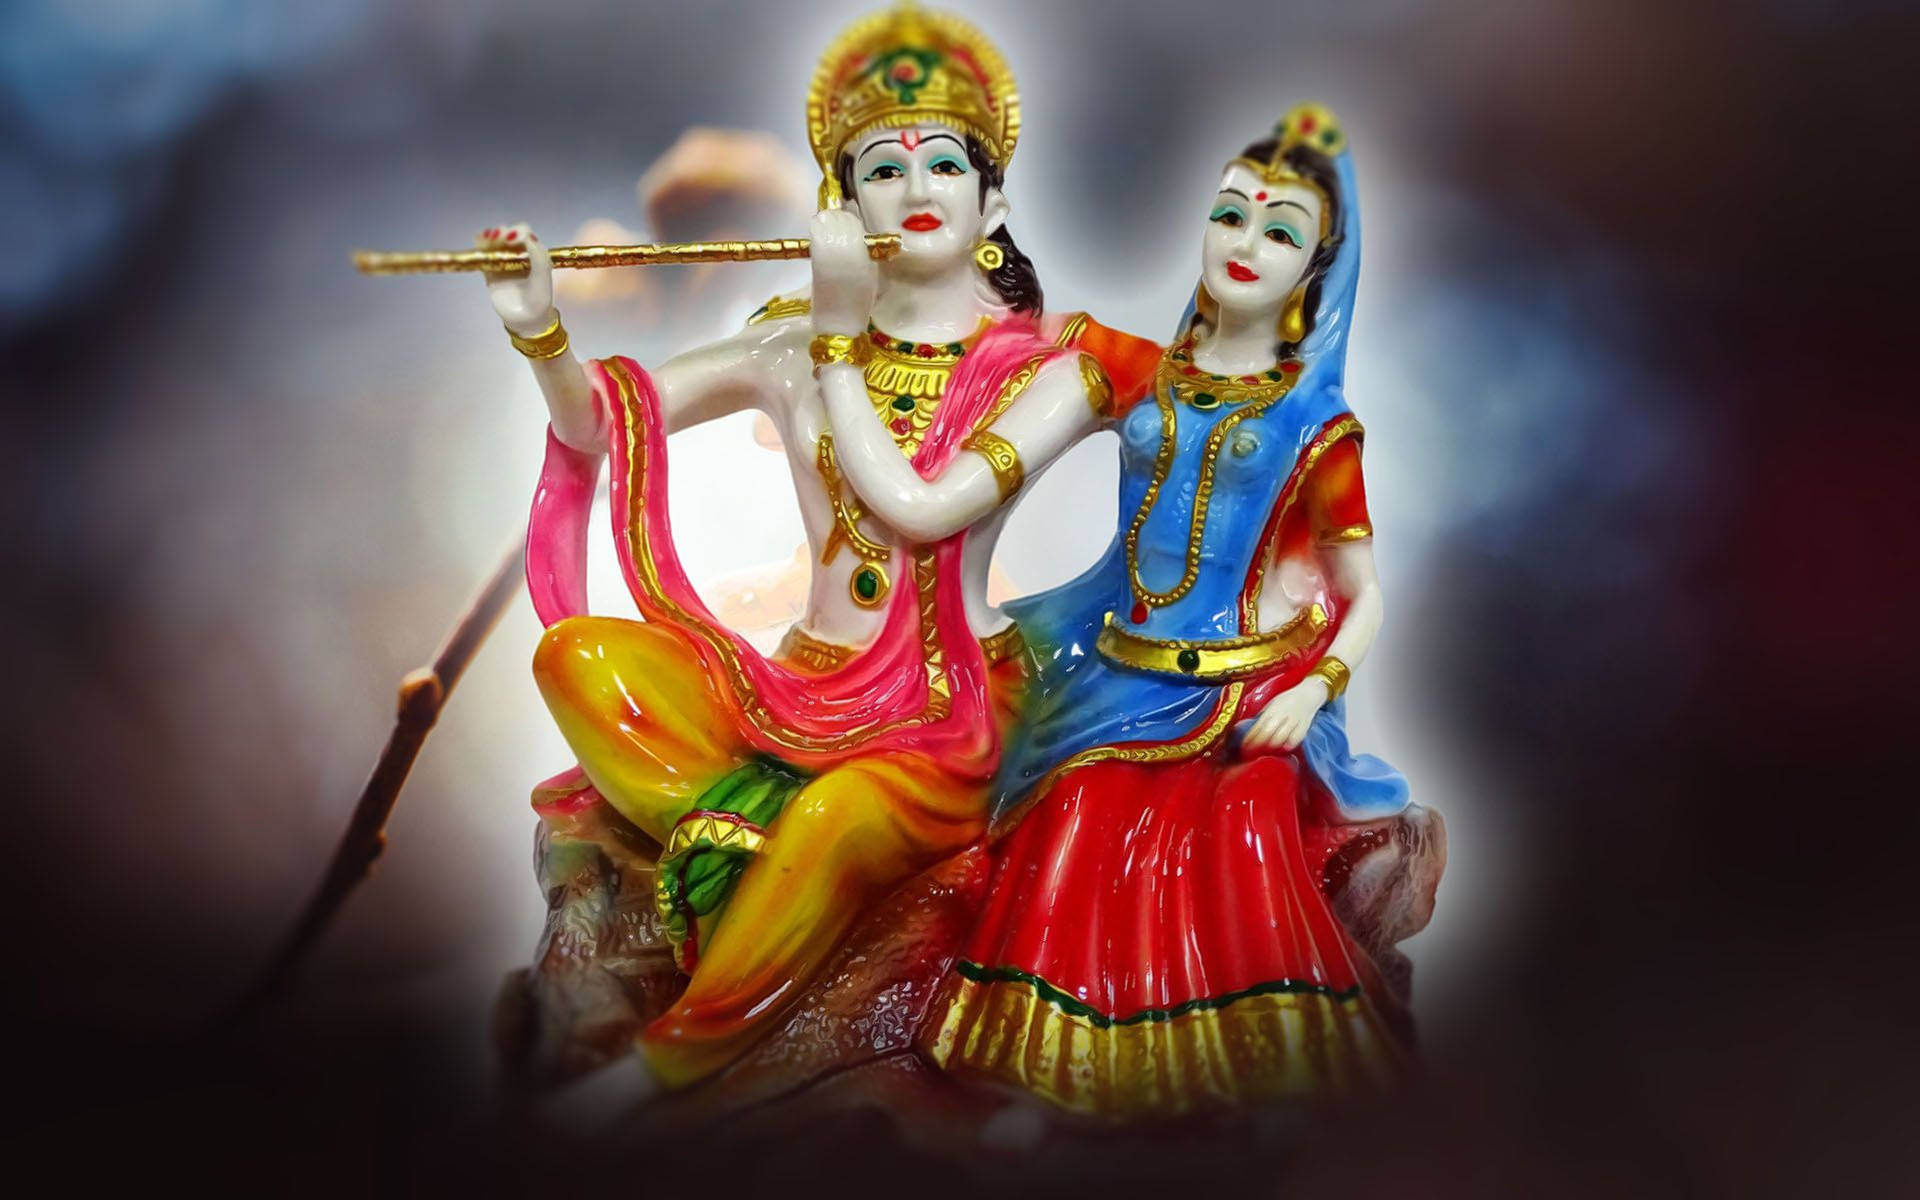 Porzellanfigurvon Radha Und Lord Krishna In 4k Wallpaper